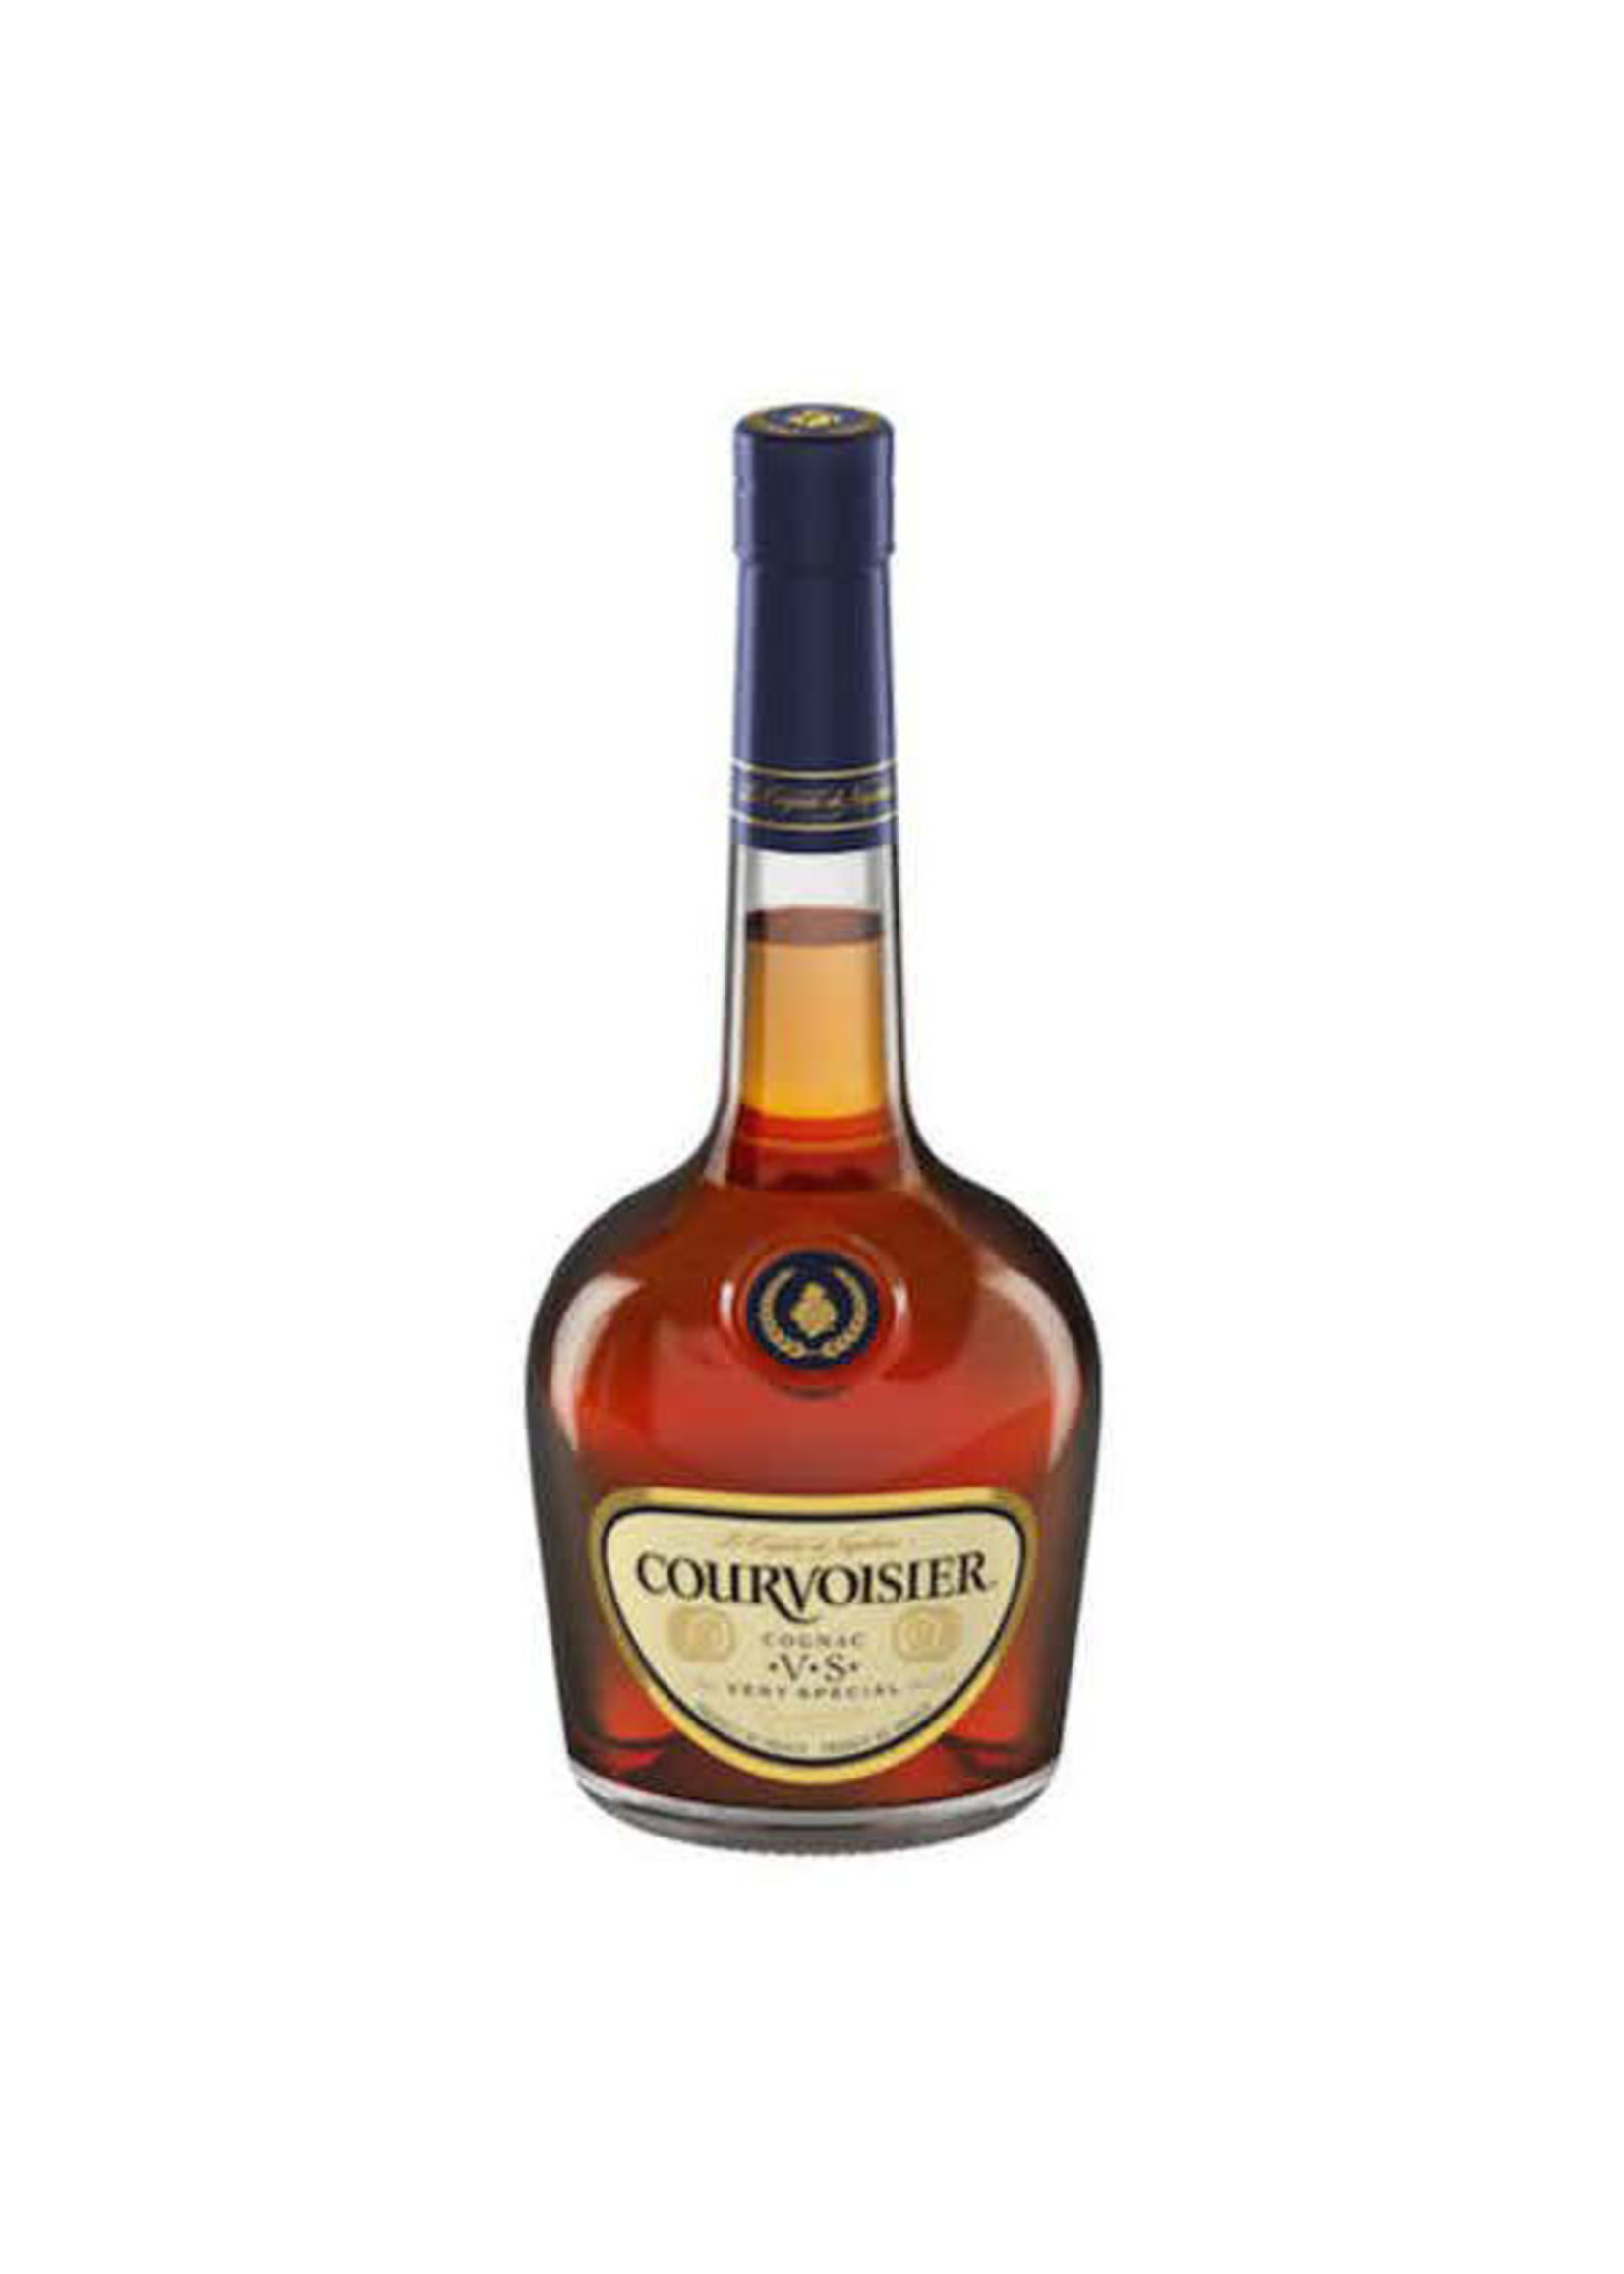 Courvoisier VSOP Cognac 80Proof 375ml